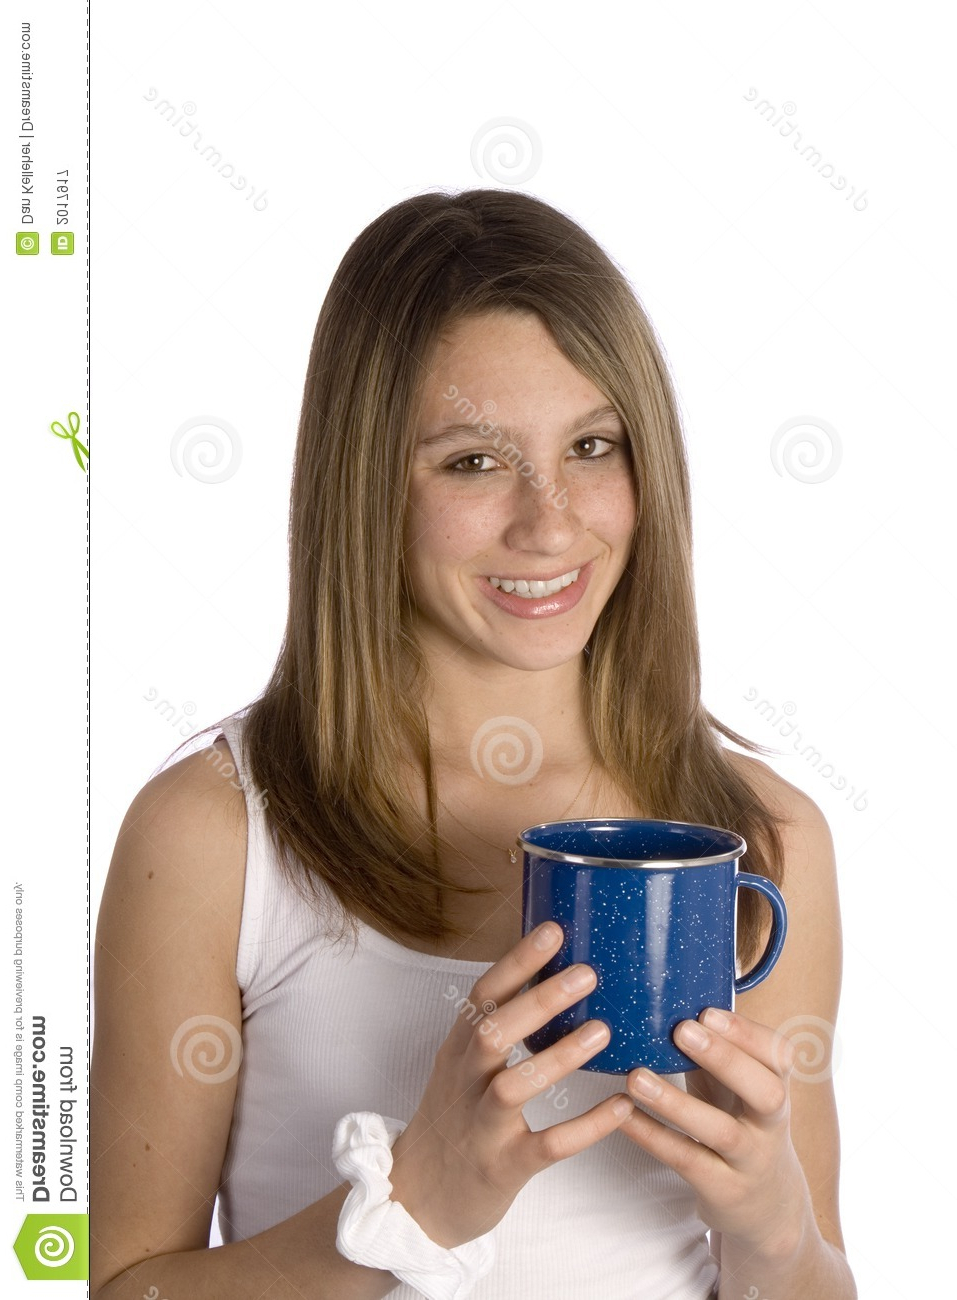 Teen Girl Smiling With Coffee Mug Stock Image Image 2017917